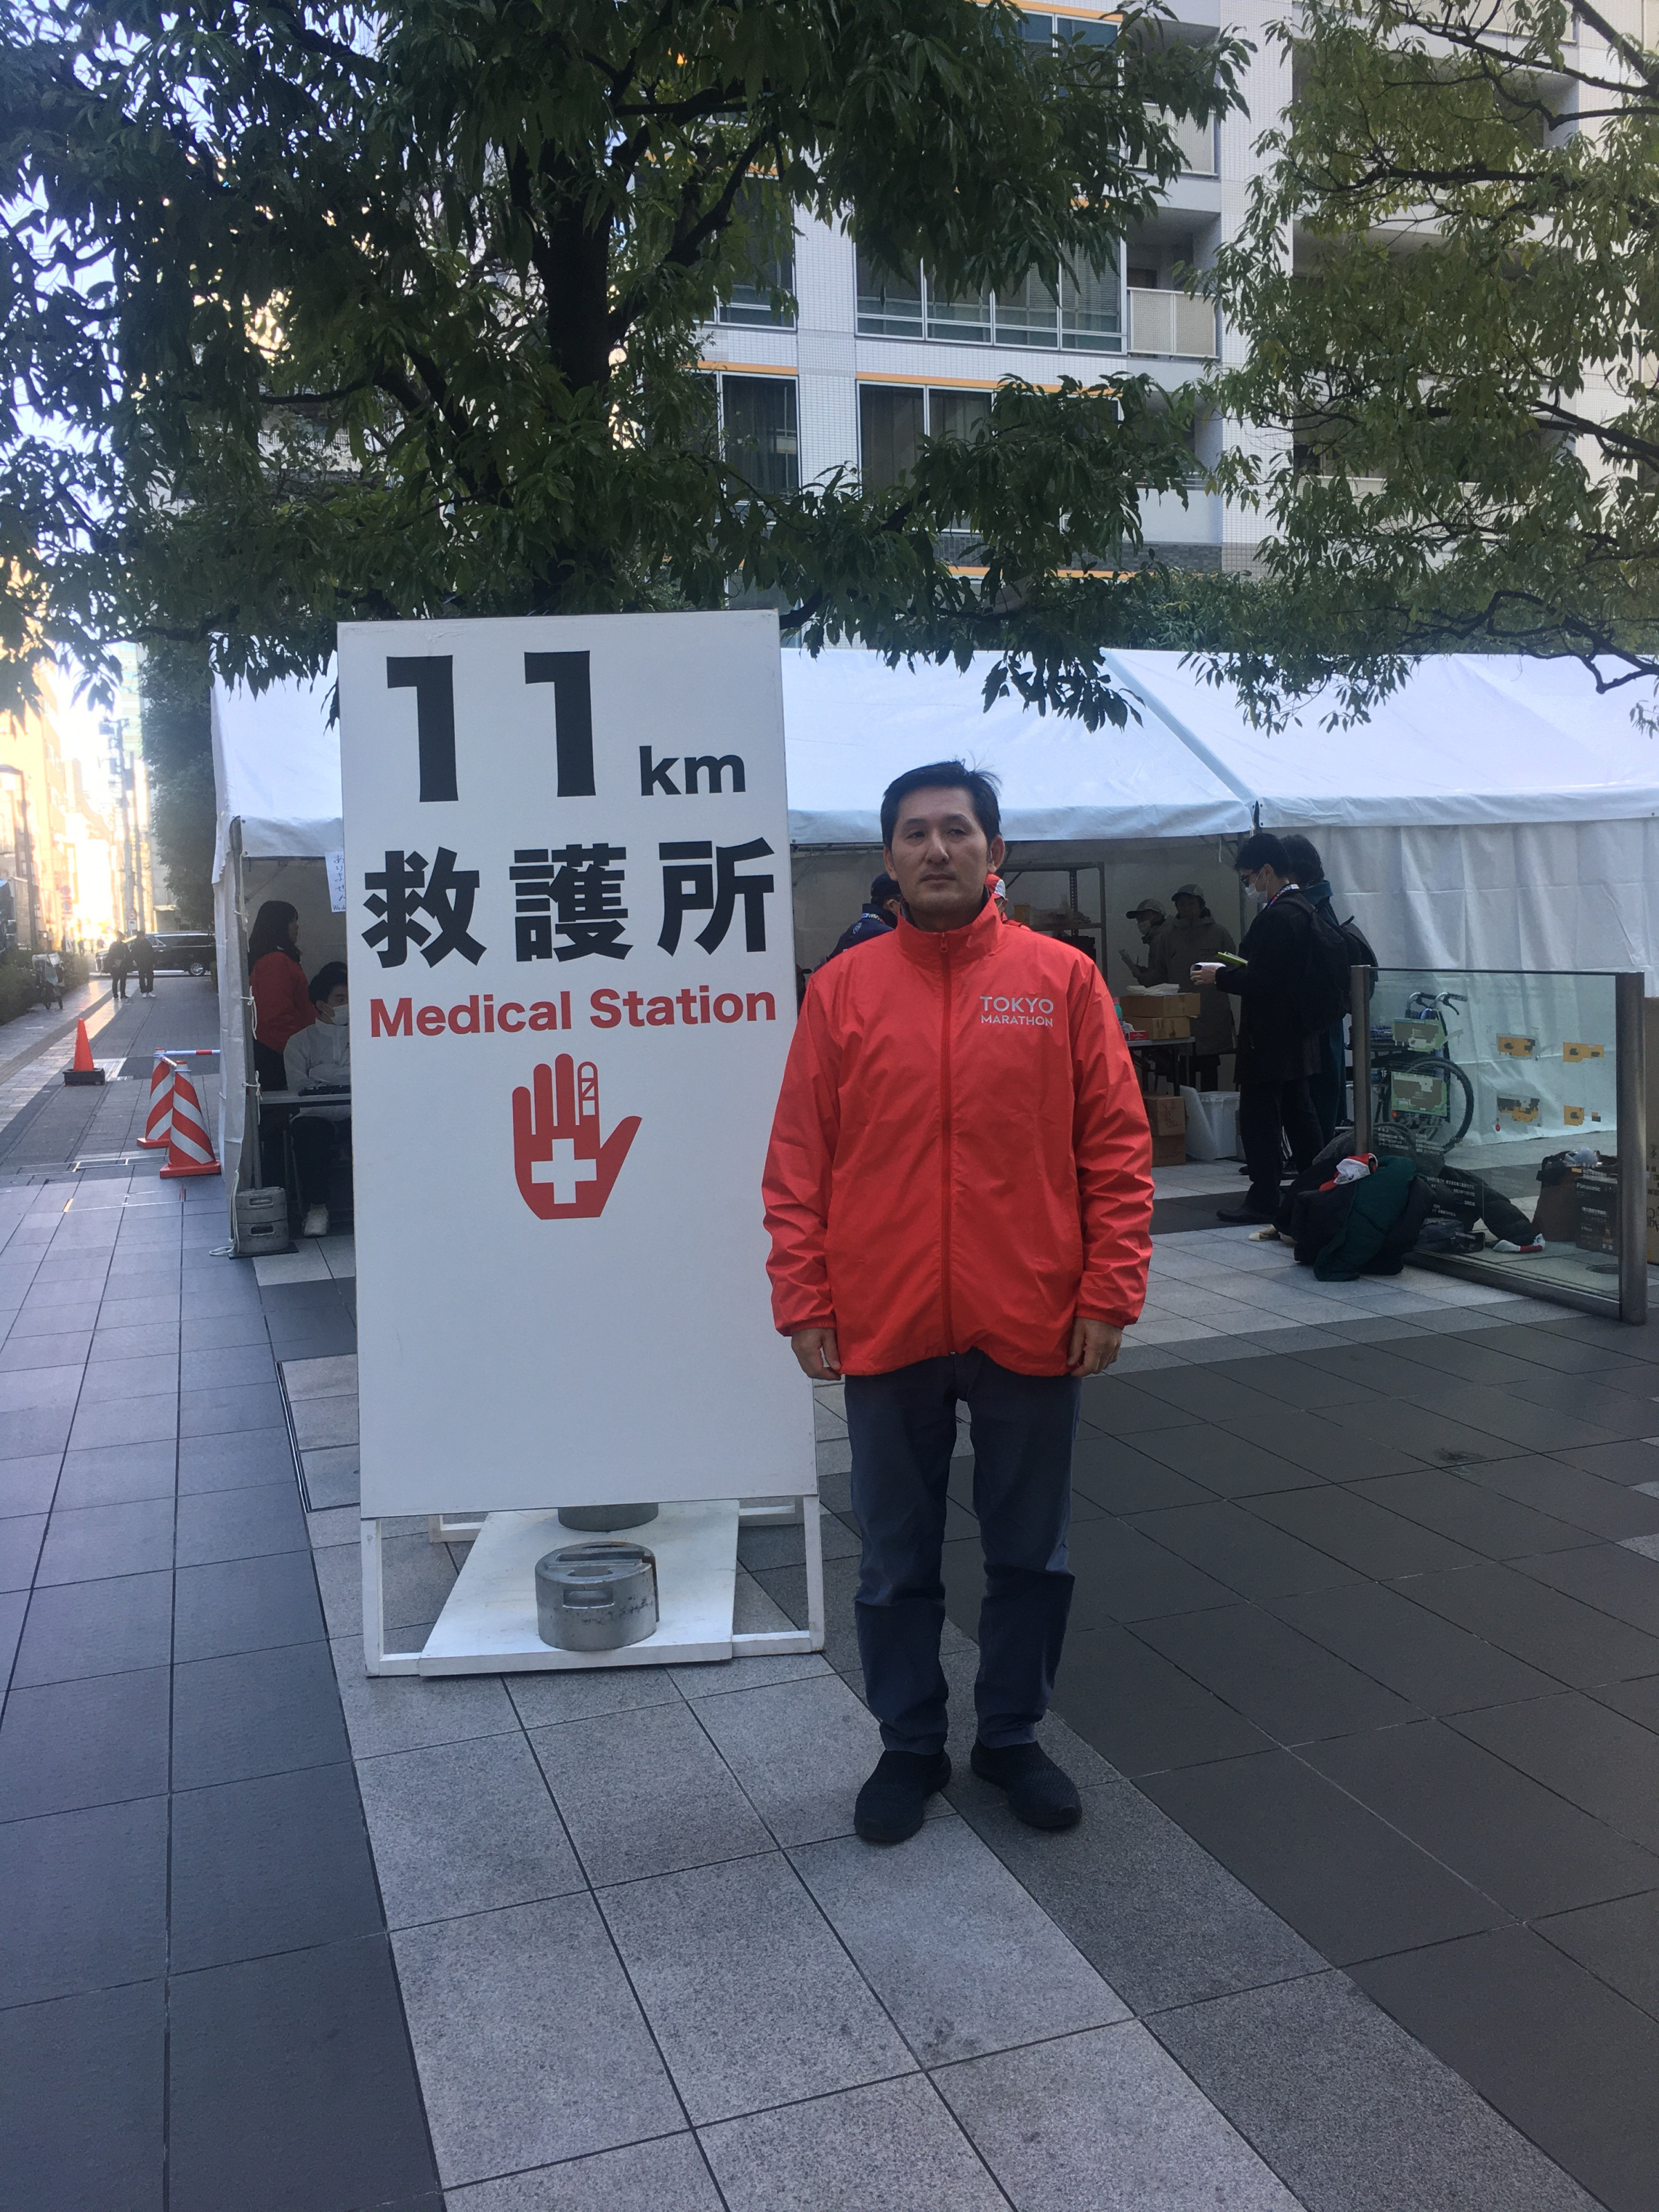 今回も東京マラソンの救護車両として参加させて頂きました。